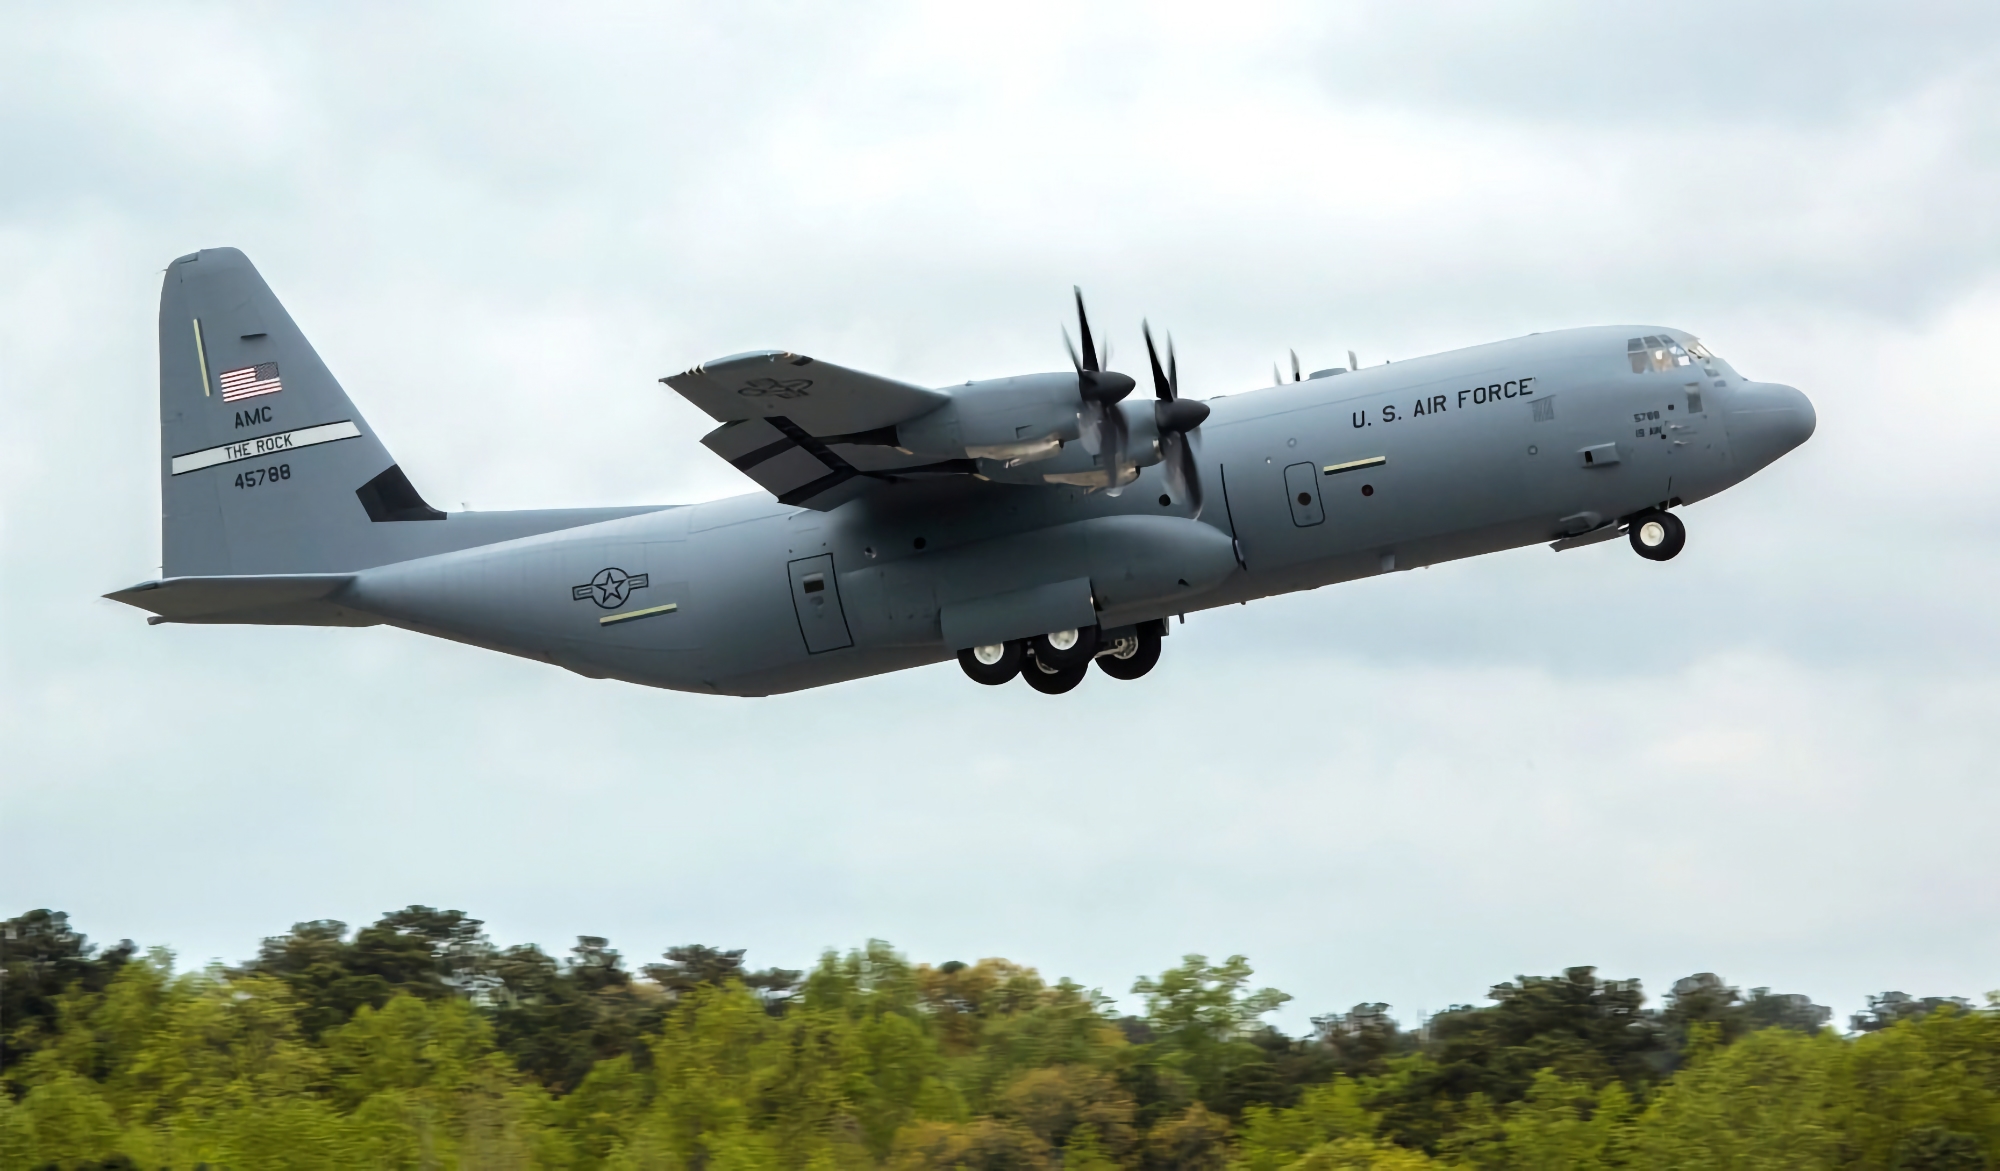 Kontrakt o wartości 390 milionów dolarów: Filipiny kupują wojskowy samolot transportowy C-130 Super Hercules od Lockheed Martin